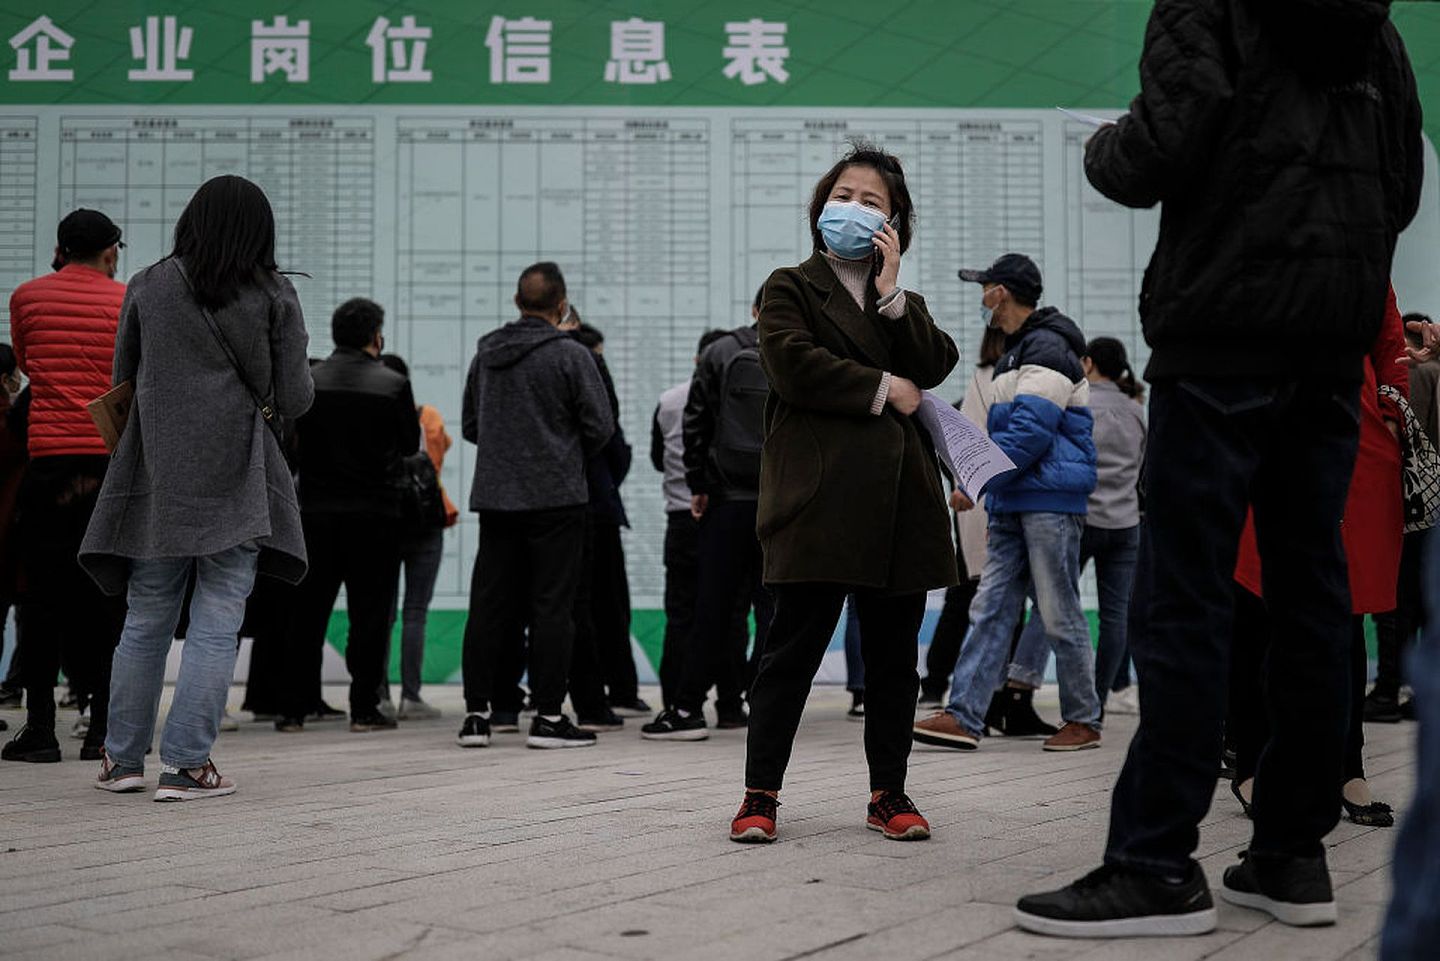 疫情对中国的就业形势也形成了一定冲击。图为4月21日务工人员在武汉的一场企业招聘会上寻找工作机会。（Getty）